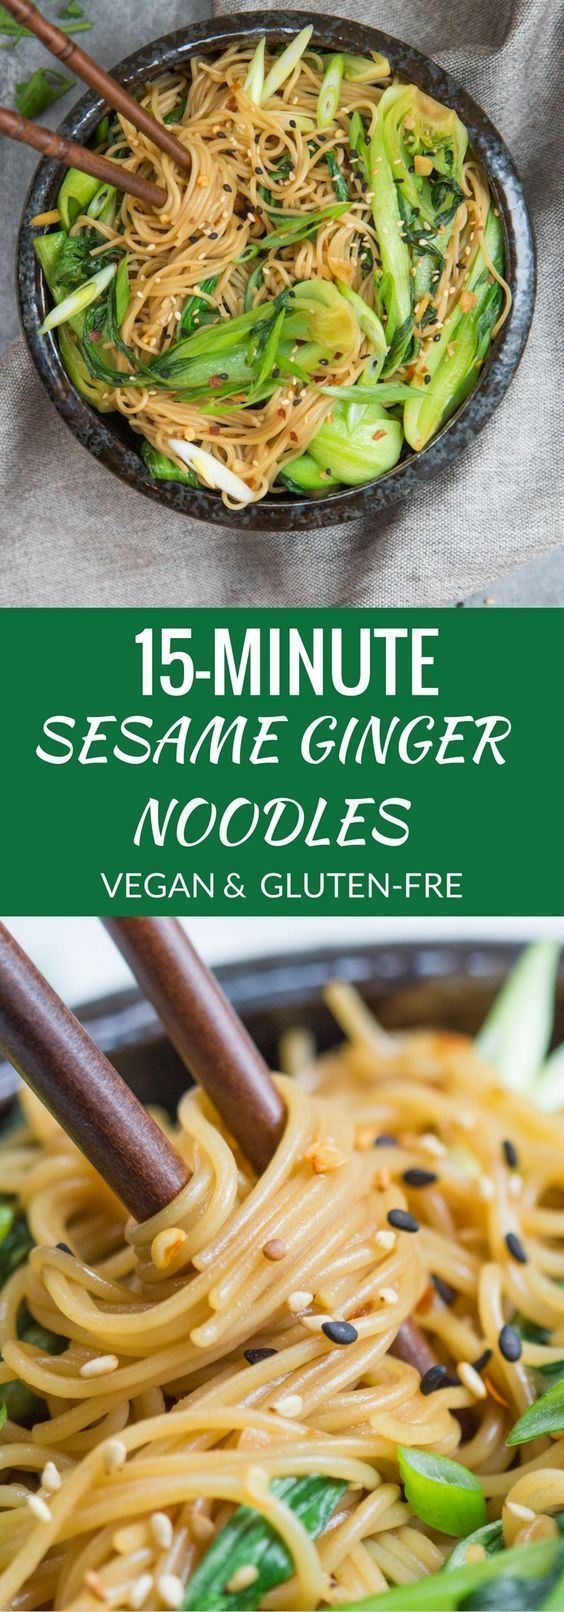 15 minute sesame ginger noodles